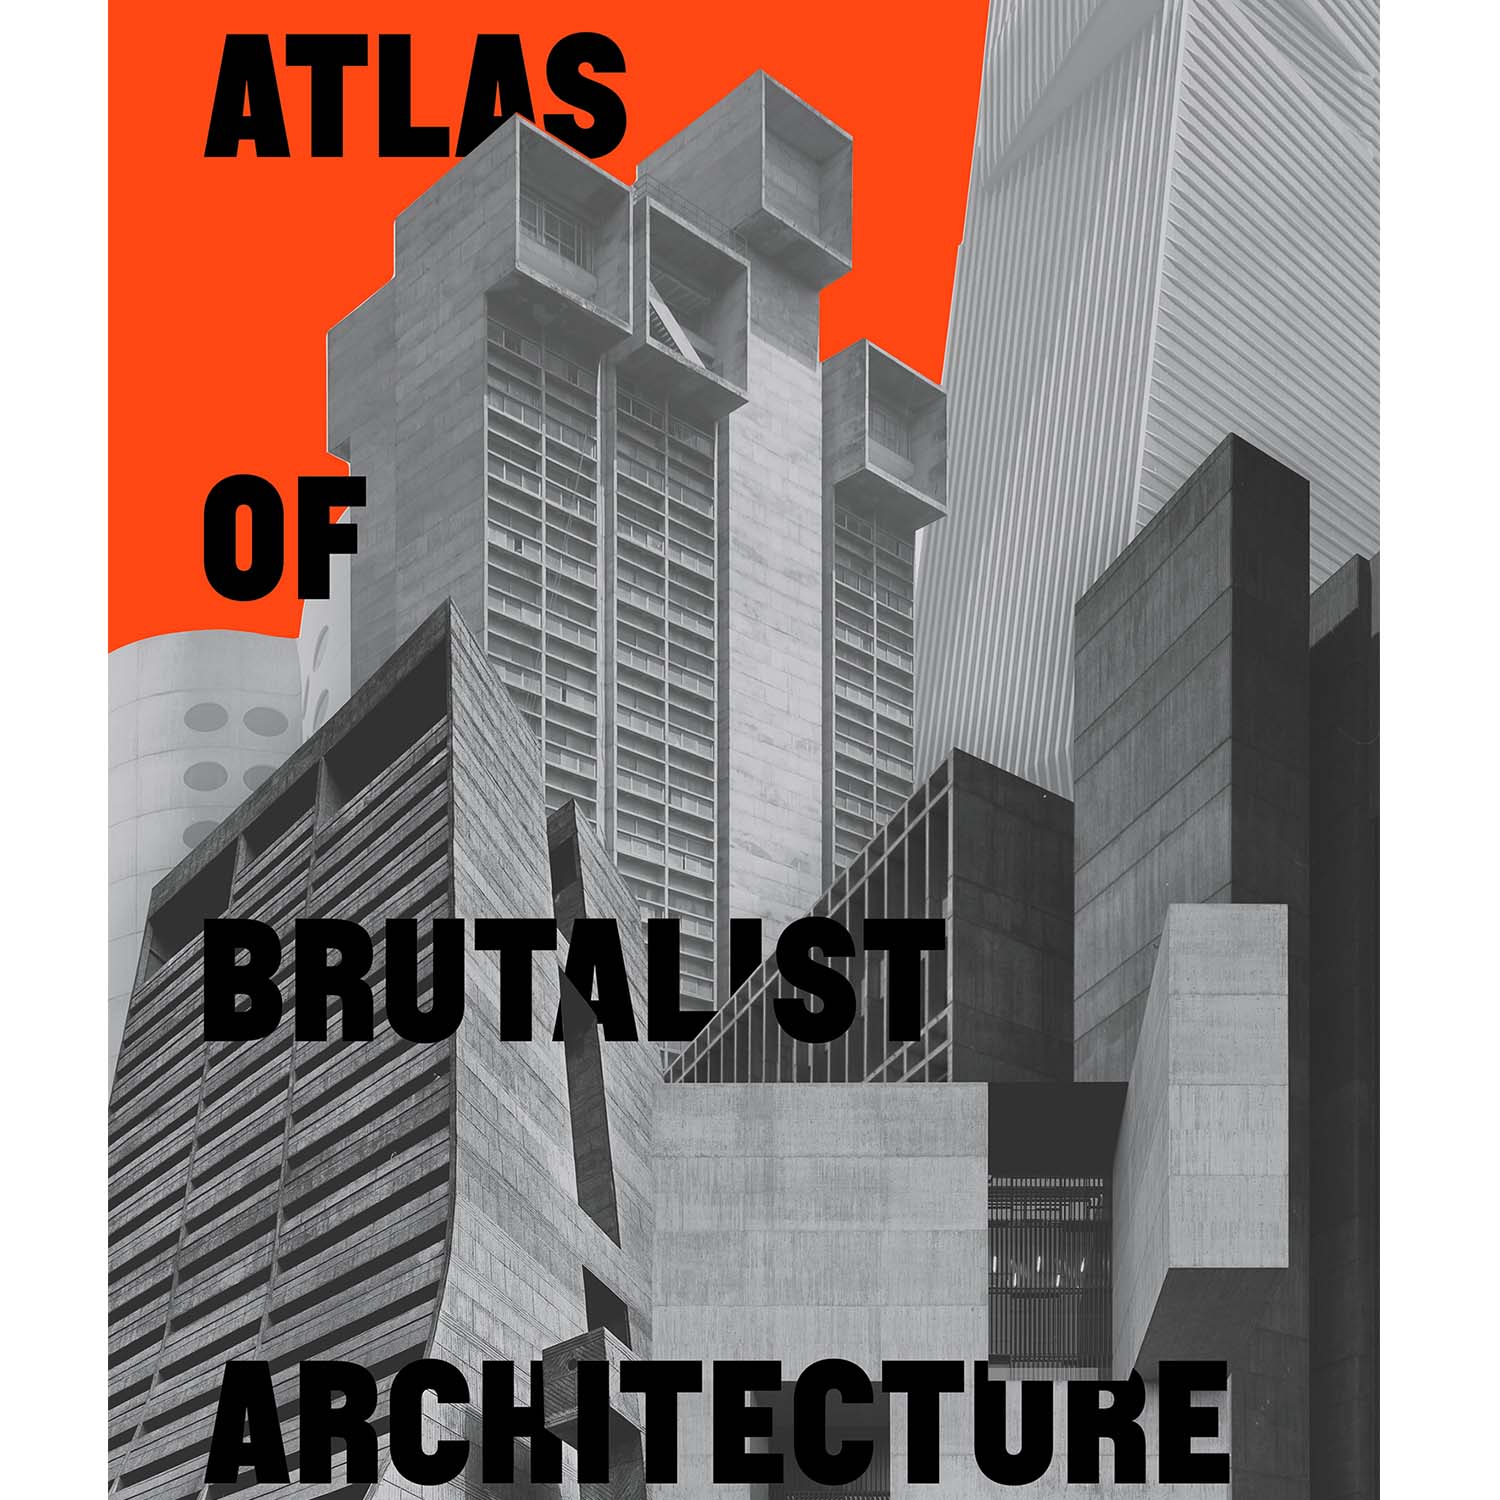 Imagen de Atlas de Arquitectura Brutalista